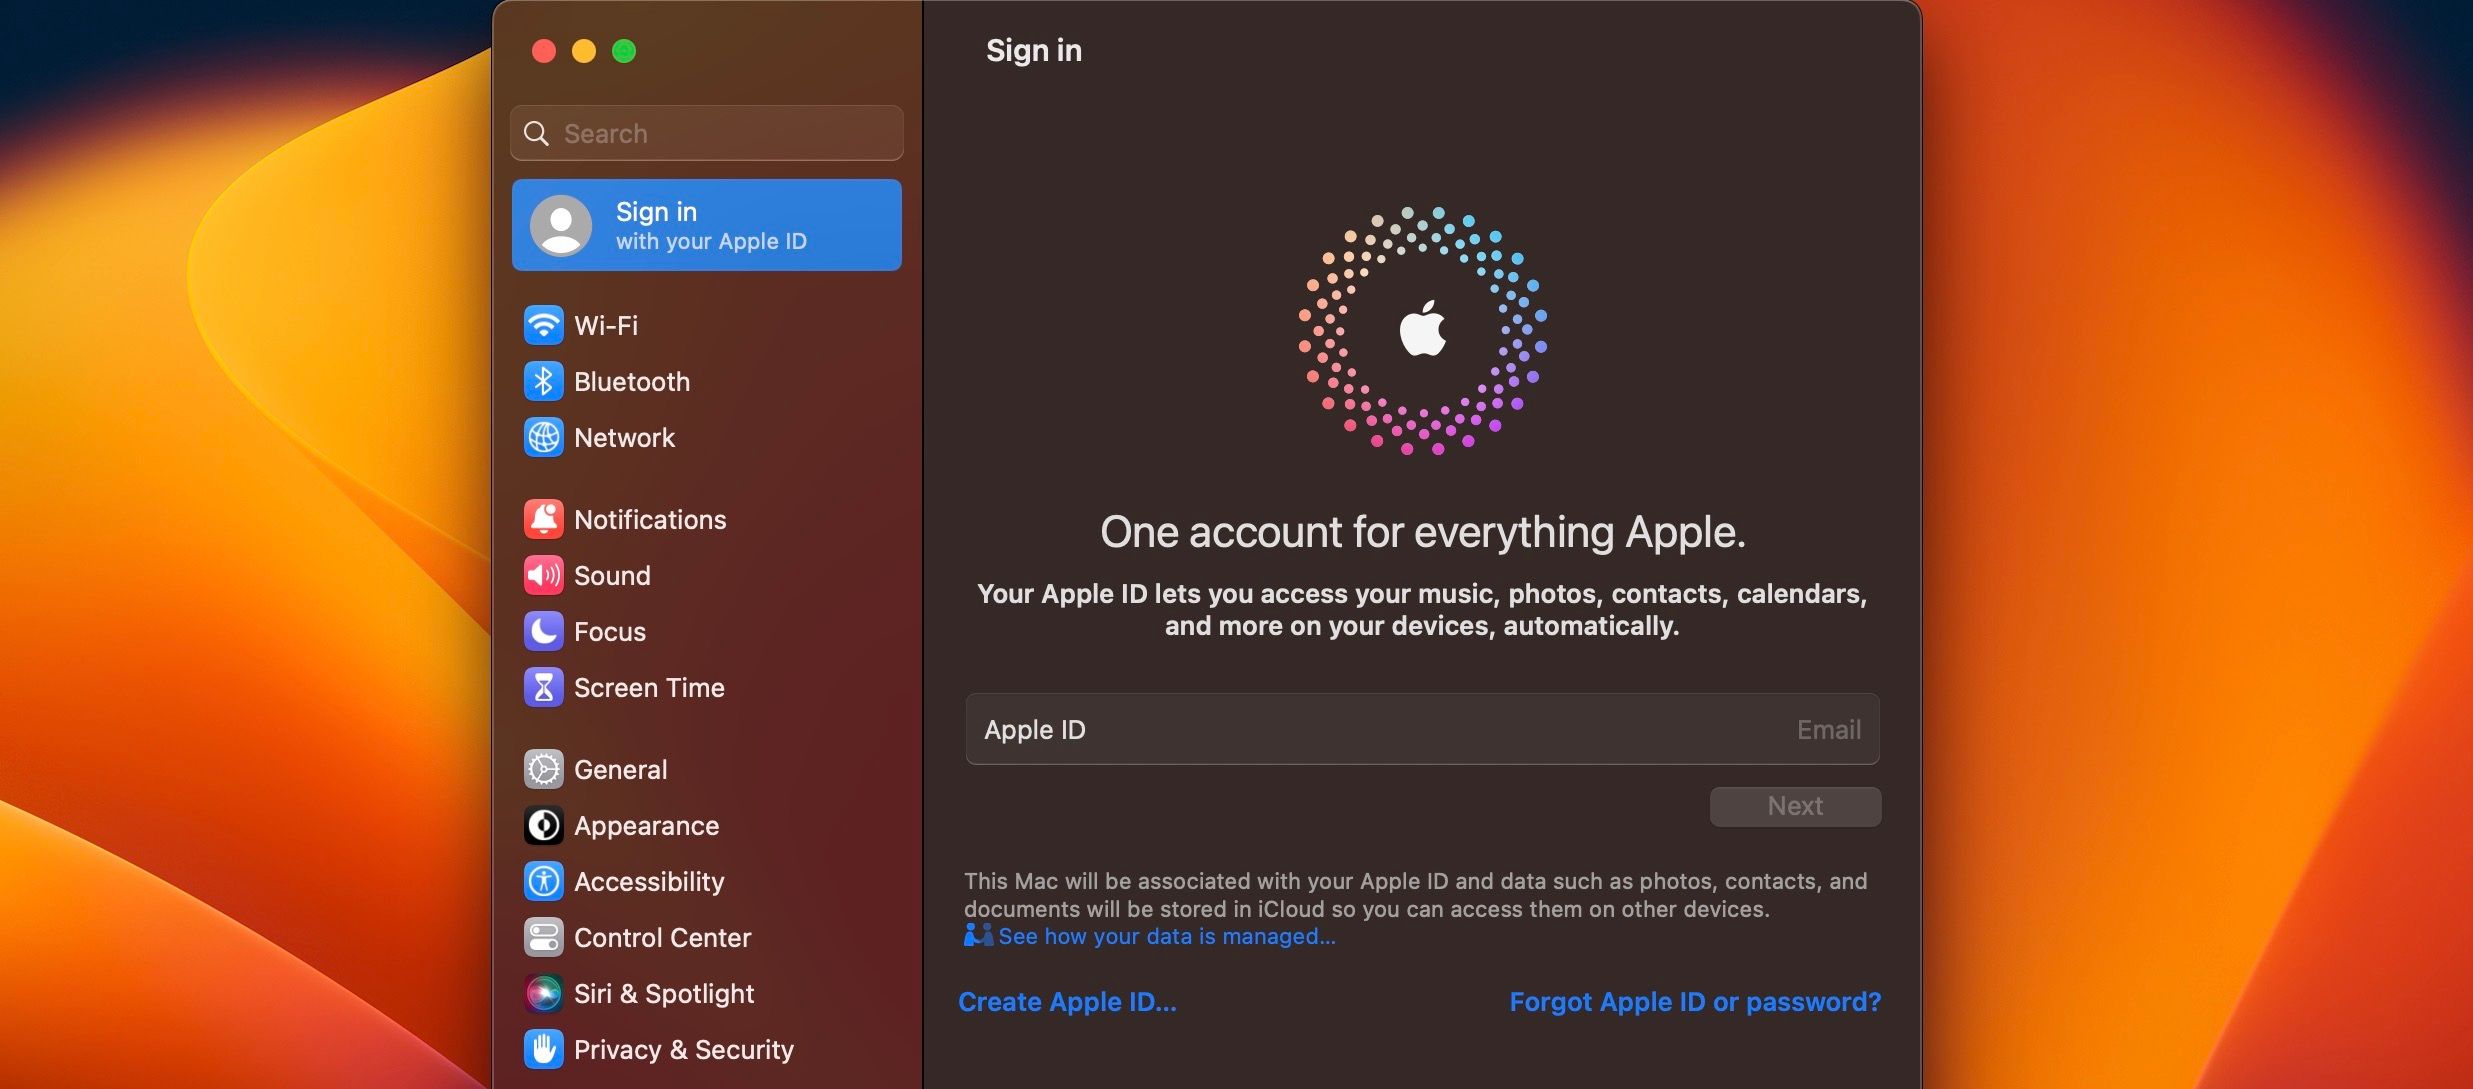 صفحه تنظیمات سیستم برای ورود به Apple ID در macOS